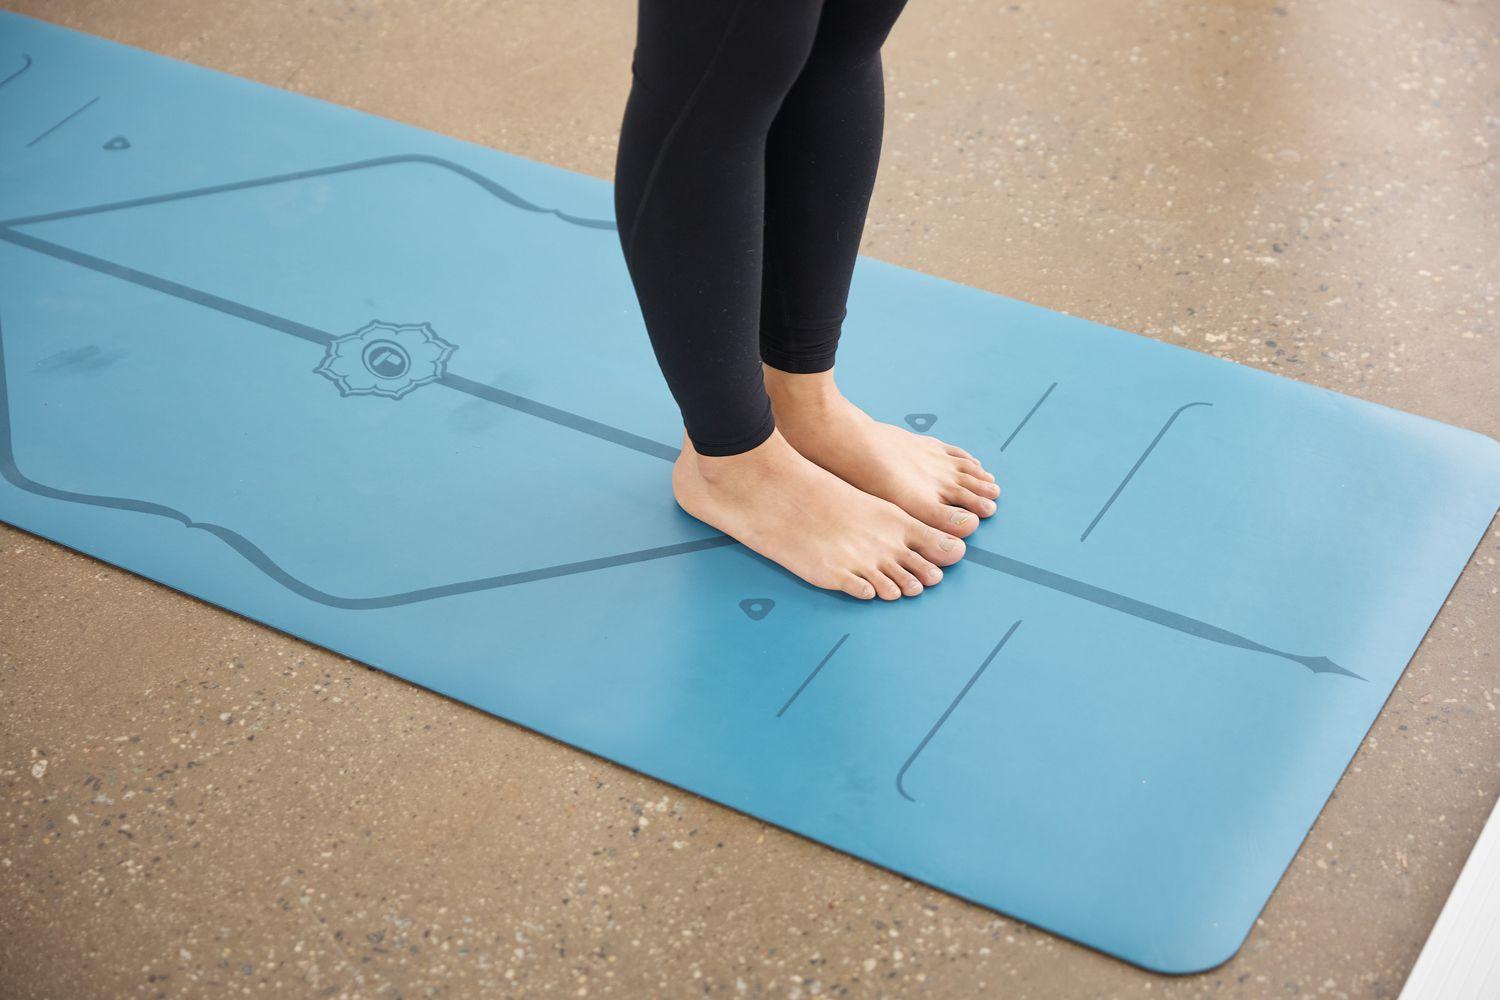 dropshipping products - Yoga mats